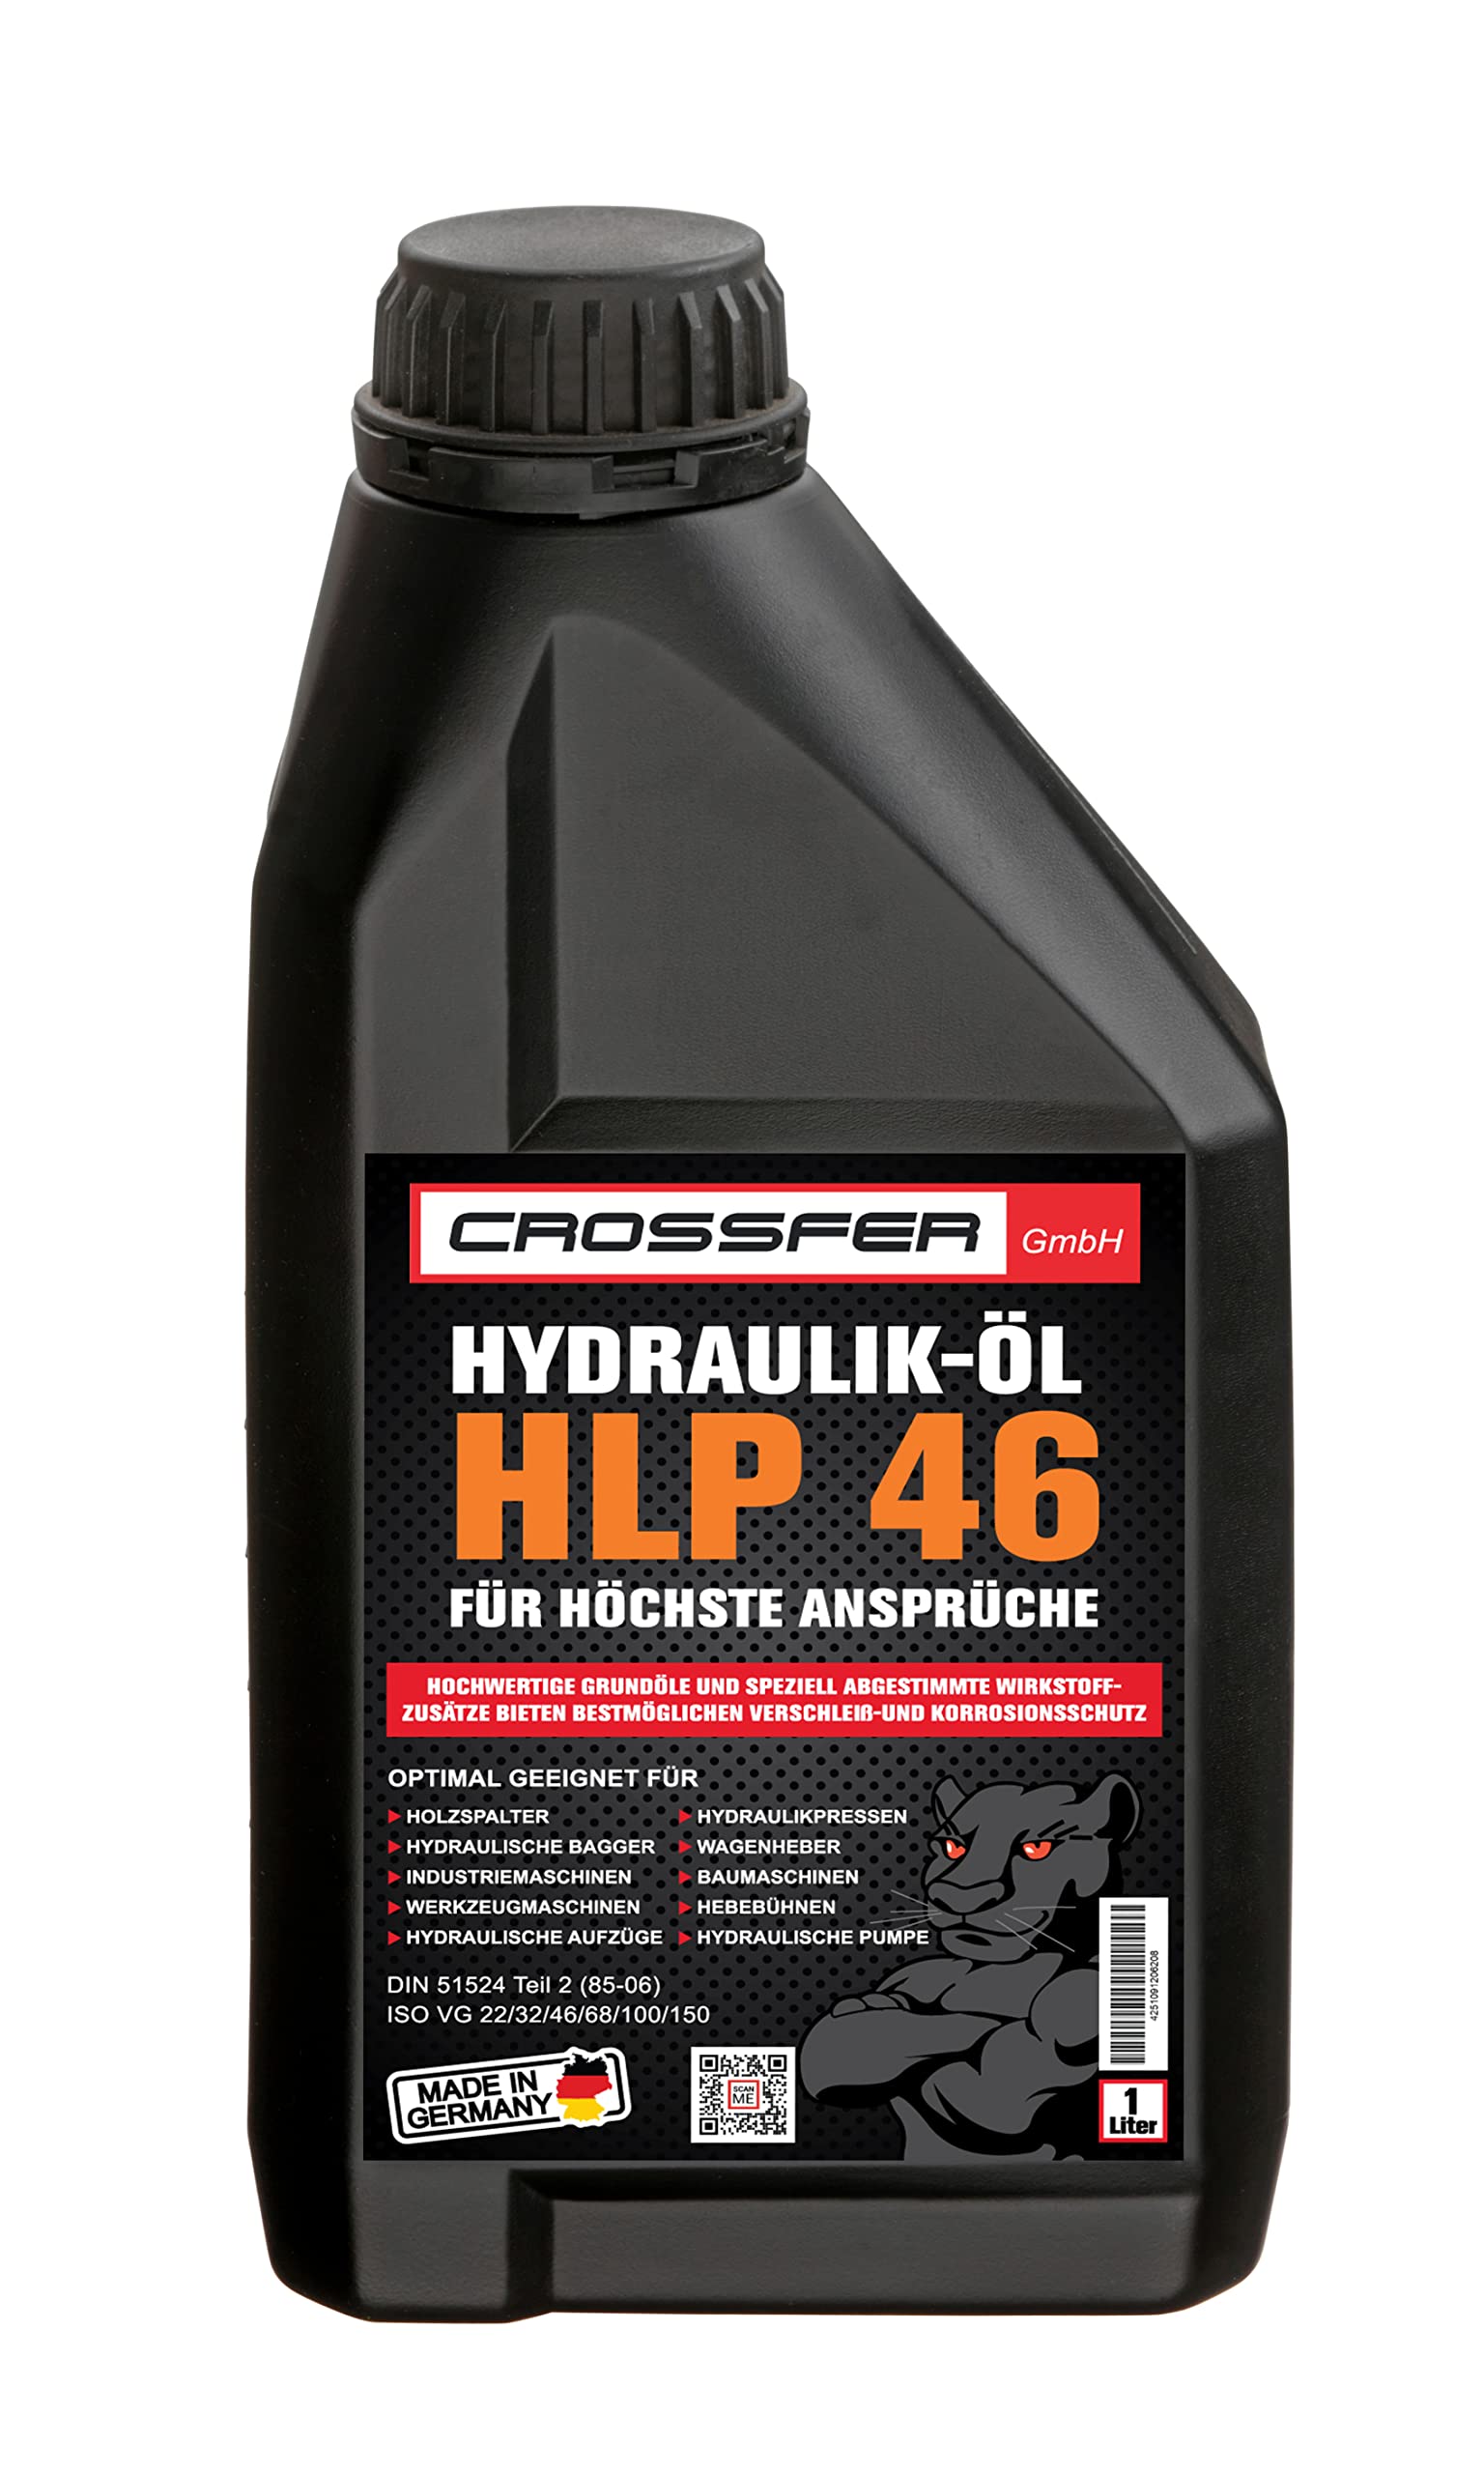 CROSSFER 1 Liter Kanister HLP46 Hydrauliköl für Hydraulikpressen, Holzspalter, Wagenheber, Hydraulikflüssigkeit mit 46er Viskosität von AUTDER